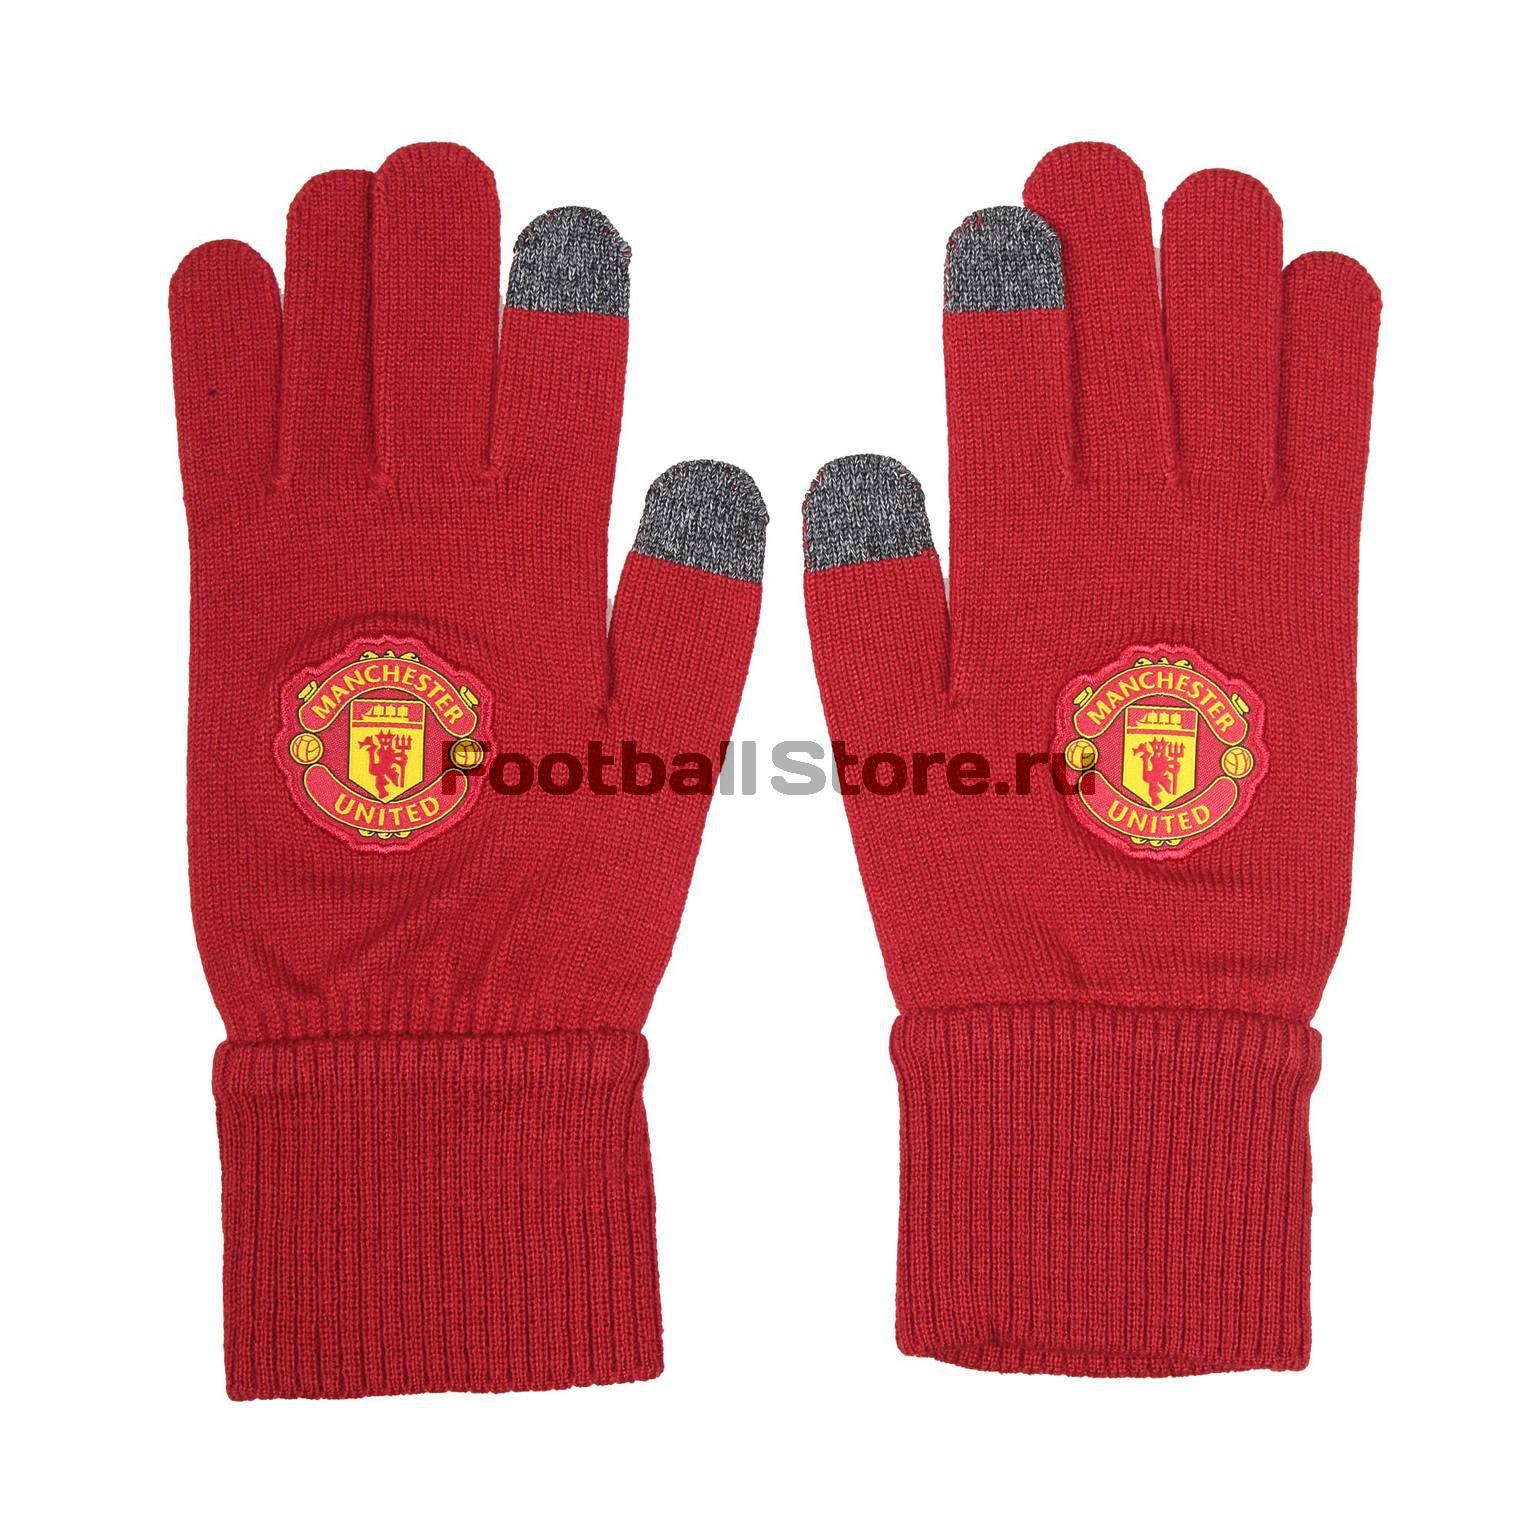 Перчатки тренировочные Adidas Manchester United Gloves S95093 